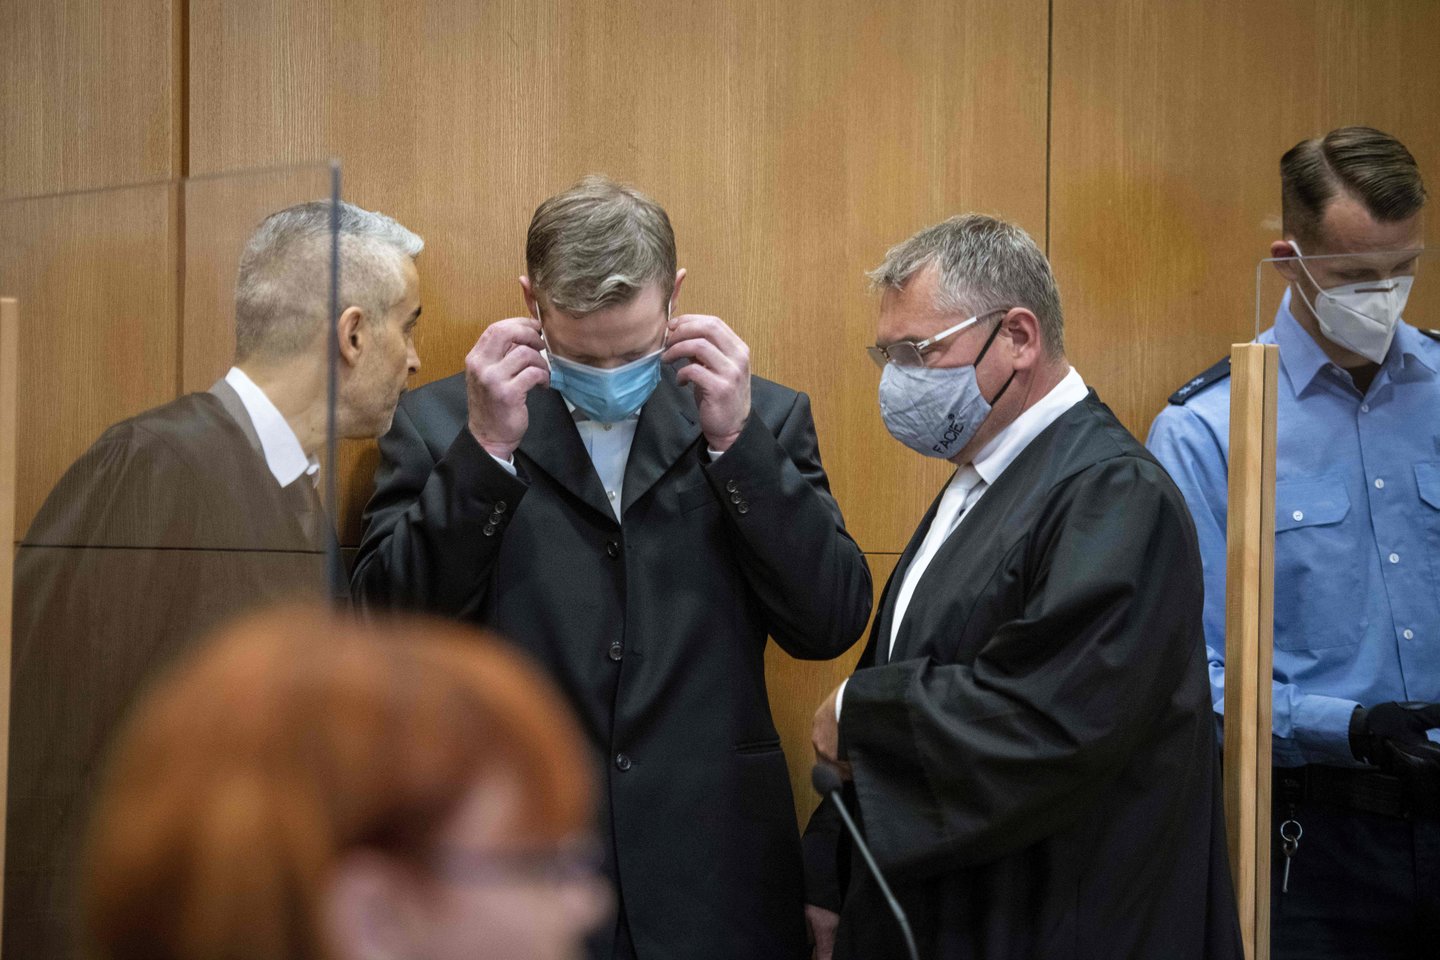  Vokietijos teismas antradienį pradėjo nagrinėti bylą prieš du kraštutinių dešiniųjų ekstremistus, kaltinamus pernai šalį šokiravusiu vieno regiono politiko nužudymu.<br> AFP/Scanpix nuotr.